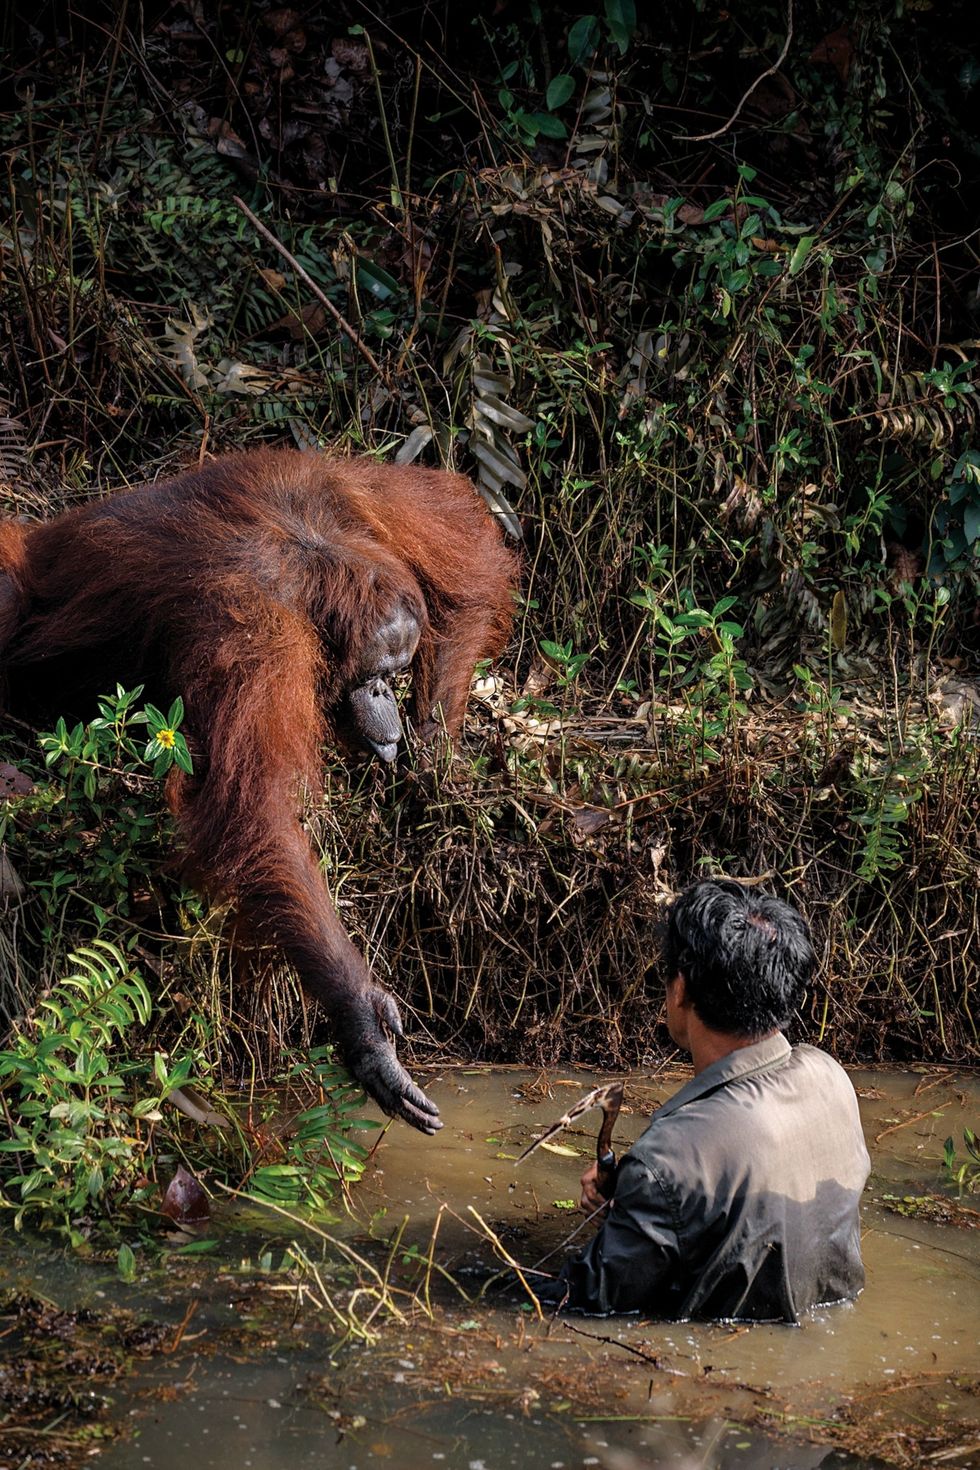 Een geredde orangoetan genaamd Anih strekt zijn hand uit naar Syahrul een medewerker van de Borneo Orangutan Survival Foundation die Anih al jarenlang verzorgt Volgens de fotograaf keek Anih toe hoe Syahrul grote moeite had om overeind te blijven in een modderige geul en reikte hem uiteindelijk de hand De foto maakte furore op internet maar medewerkers van de stichting waarschuwen voor antropomorfisering waarbij typisch menselijk gedrag op dieren wordt geprojecteerd Ze vermoeden dat Anih om voedsel vroeg